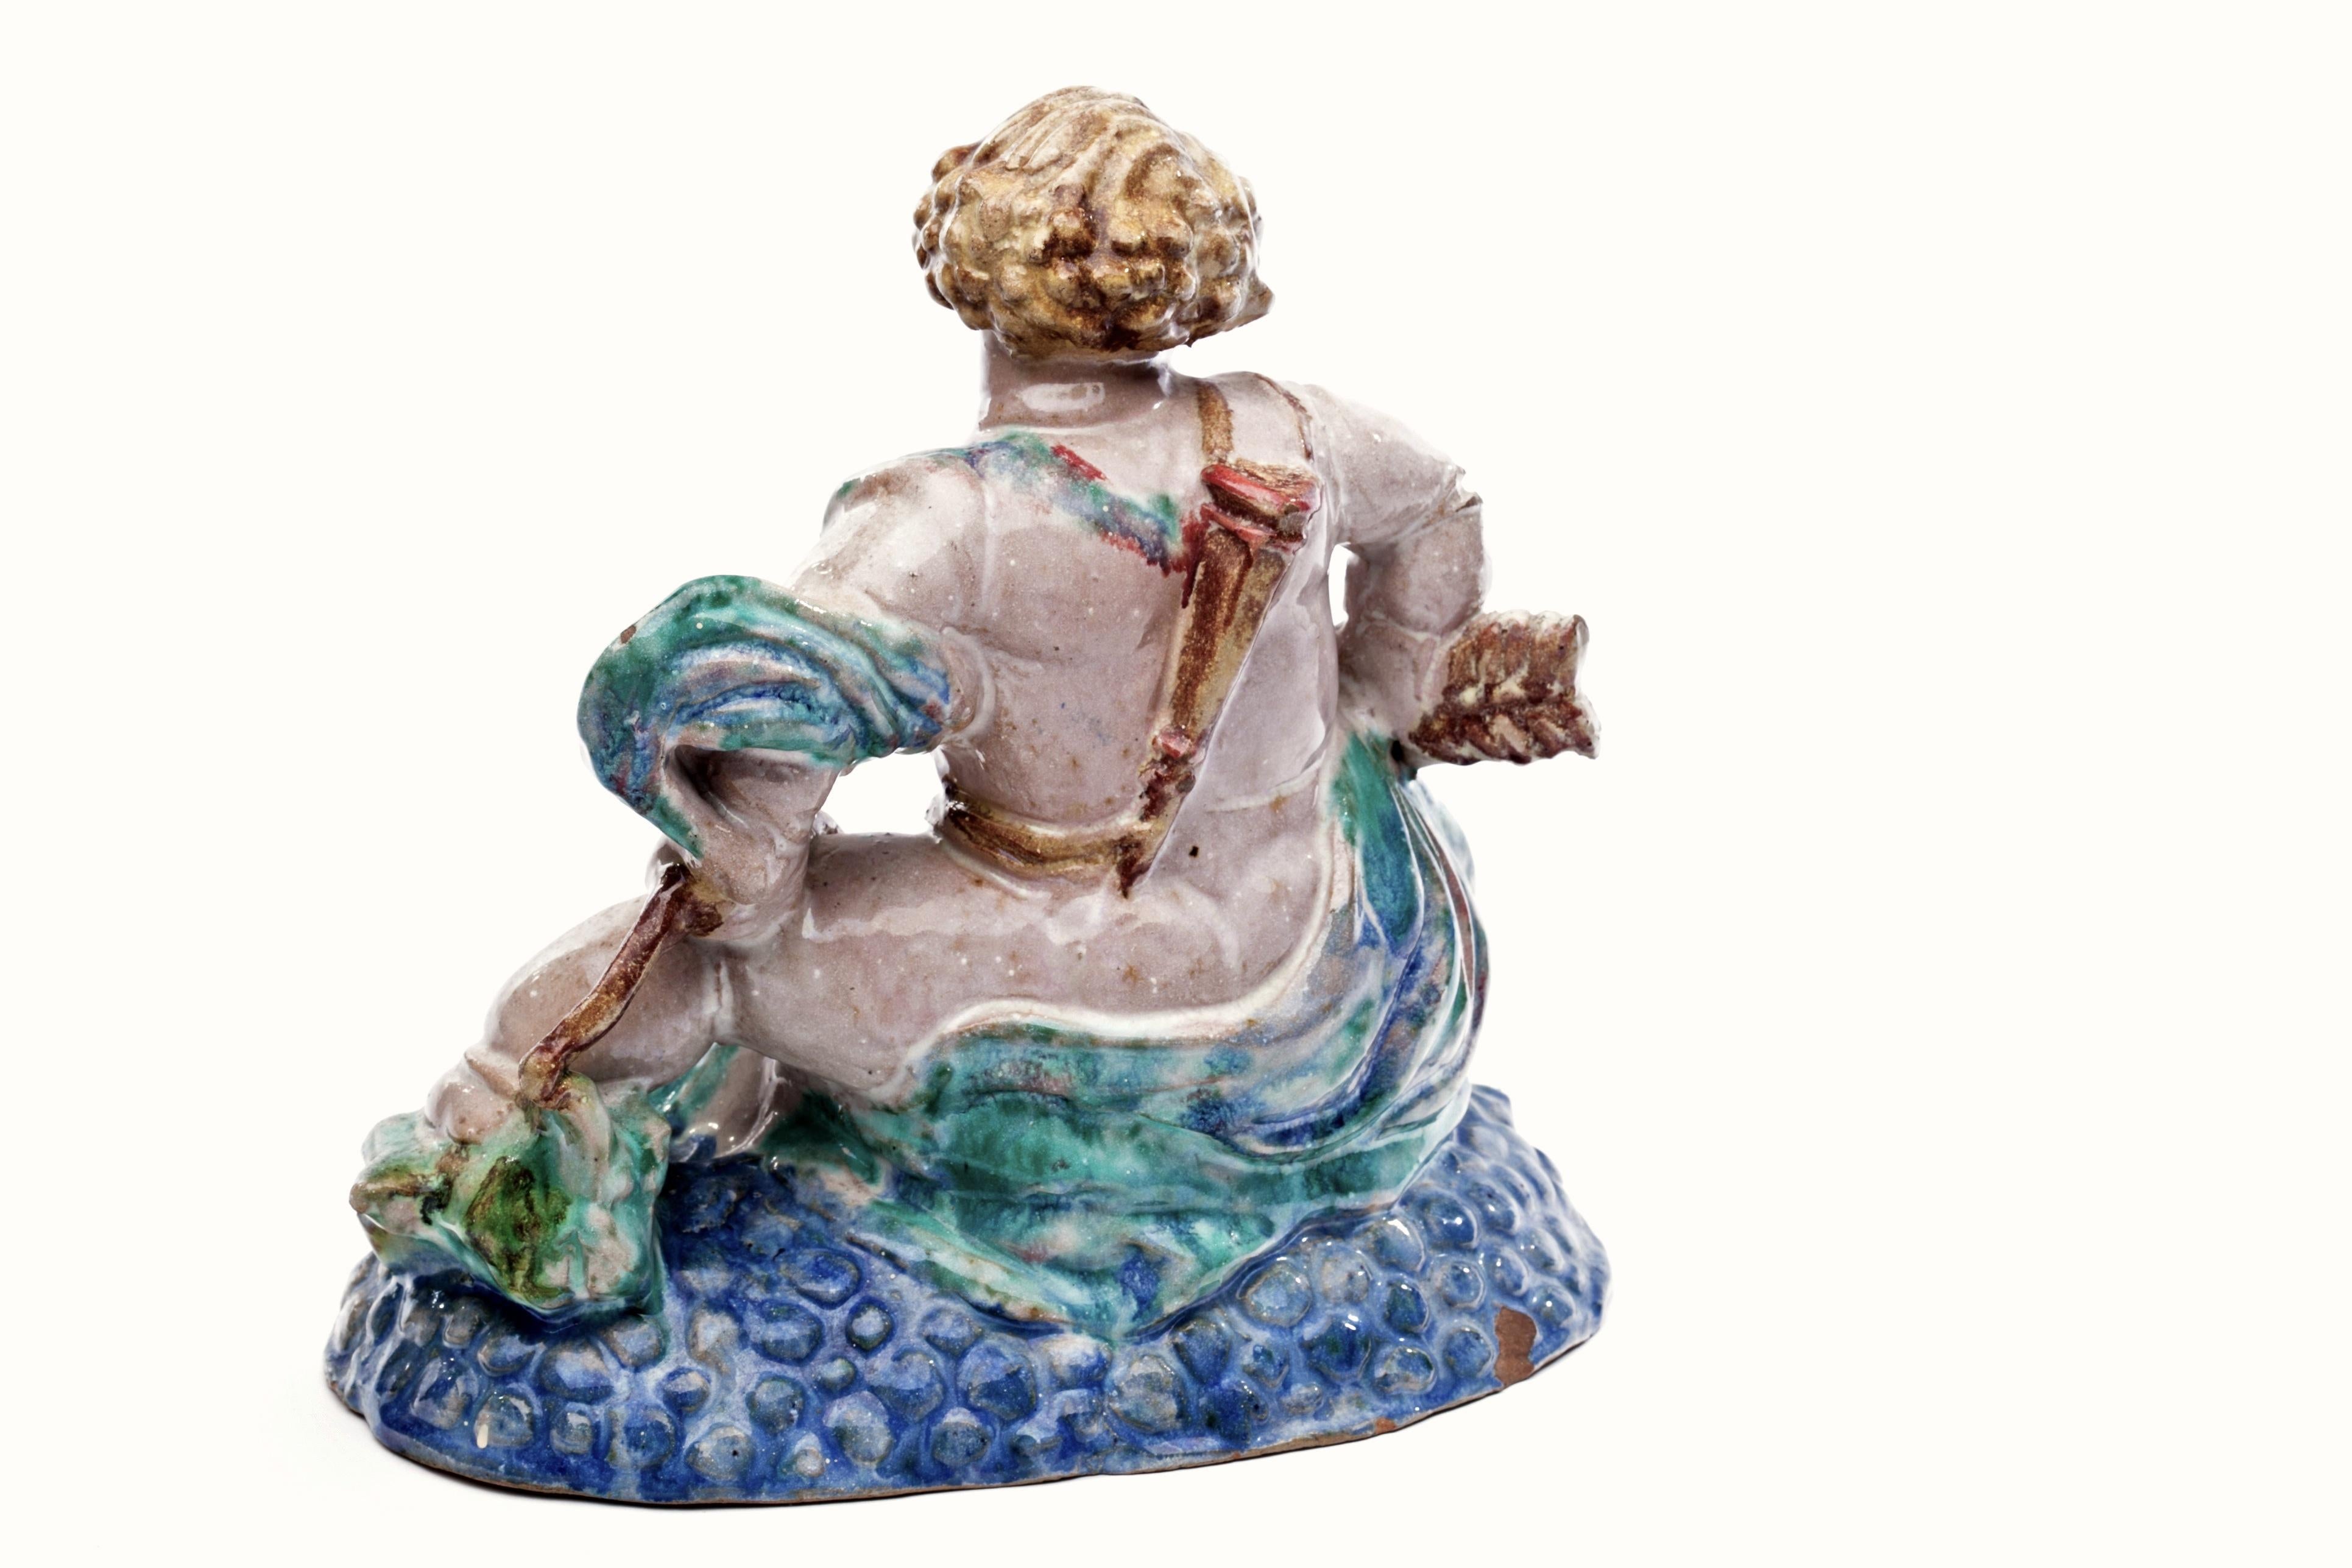 Exceptionnel Putto autrichien dans le style de Michael Powolny avec arc, flèche et carquois sur le dos, assis sur un lit coloré de bulles bleues. Magnifique sculpture en grès aux émaux riches et subtils. Des pieds fabuleux et trapus.